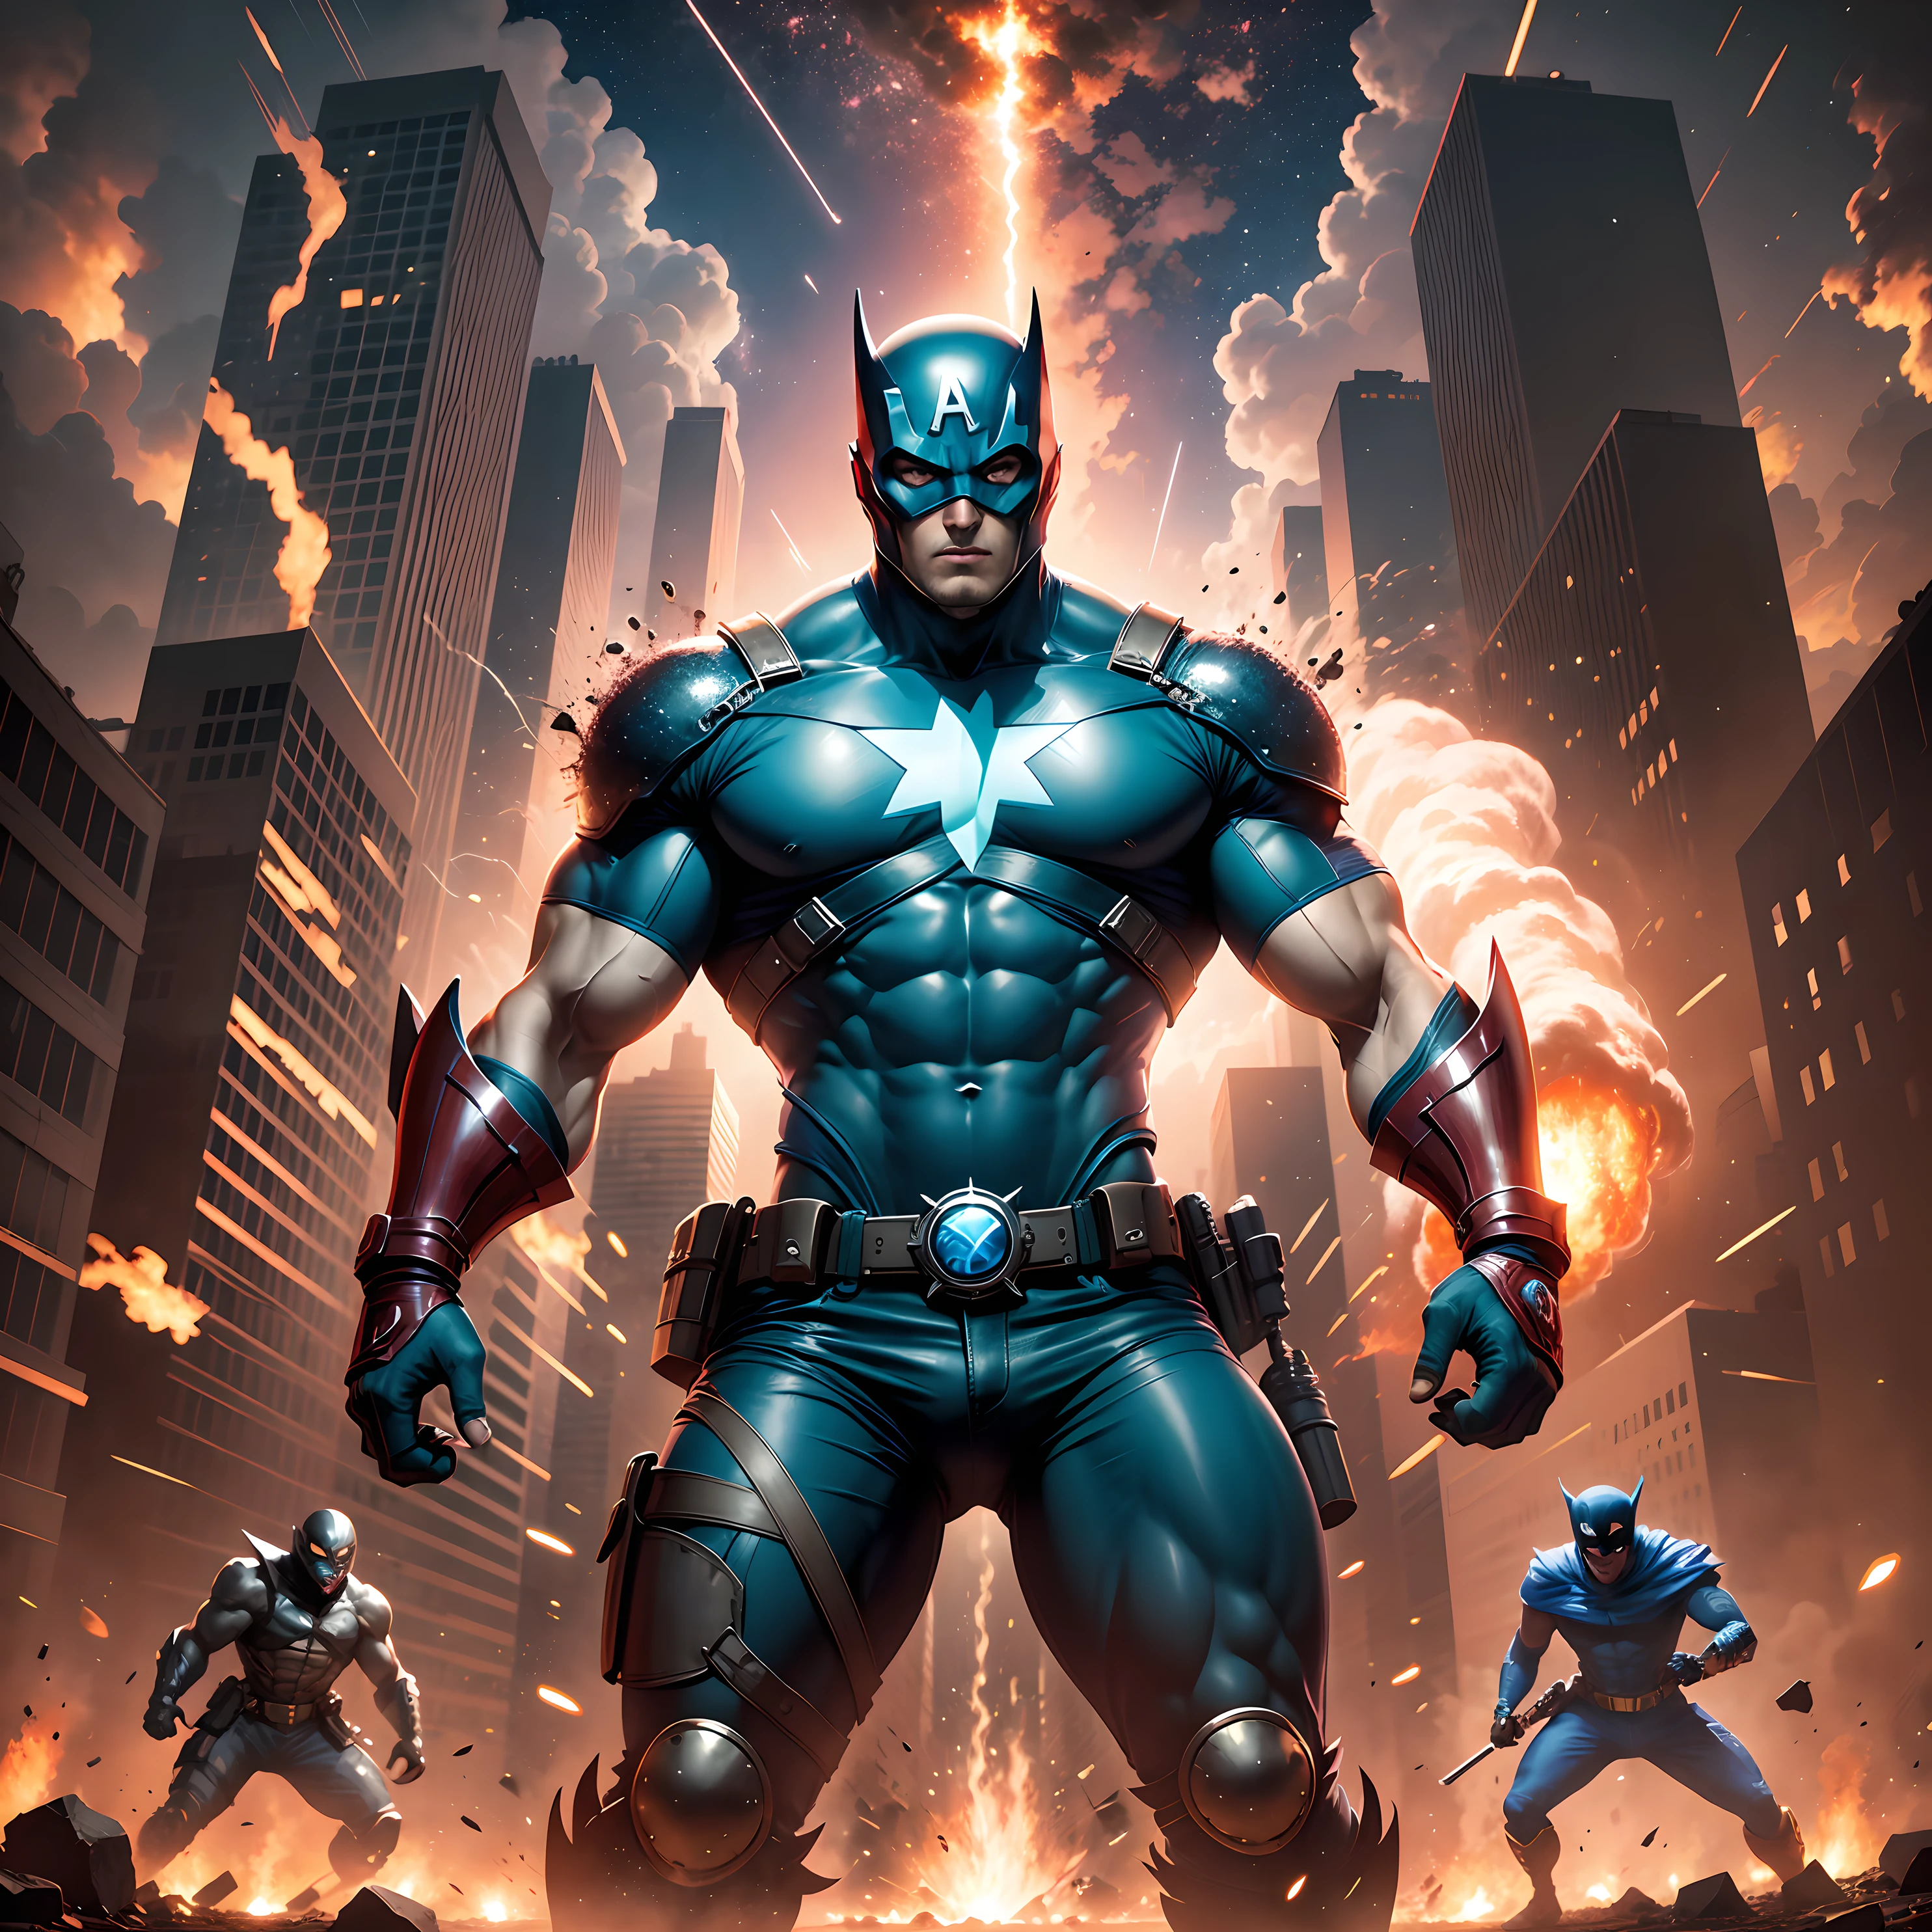 Ein Superheld im blauen Outfit kämpft in einer postapokalyptischen Welt gegen einen Bösewicht mit schwarzer Maske, umgeben von Zombies und Explosionen, während um sie herum ein Meteoritenregen fällt, 300-Filmstil. --Auto